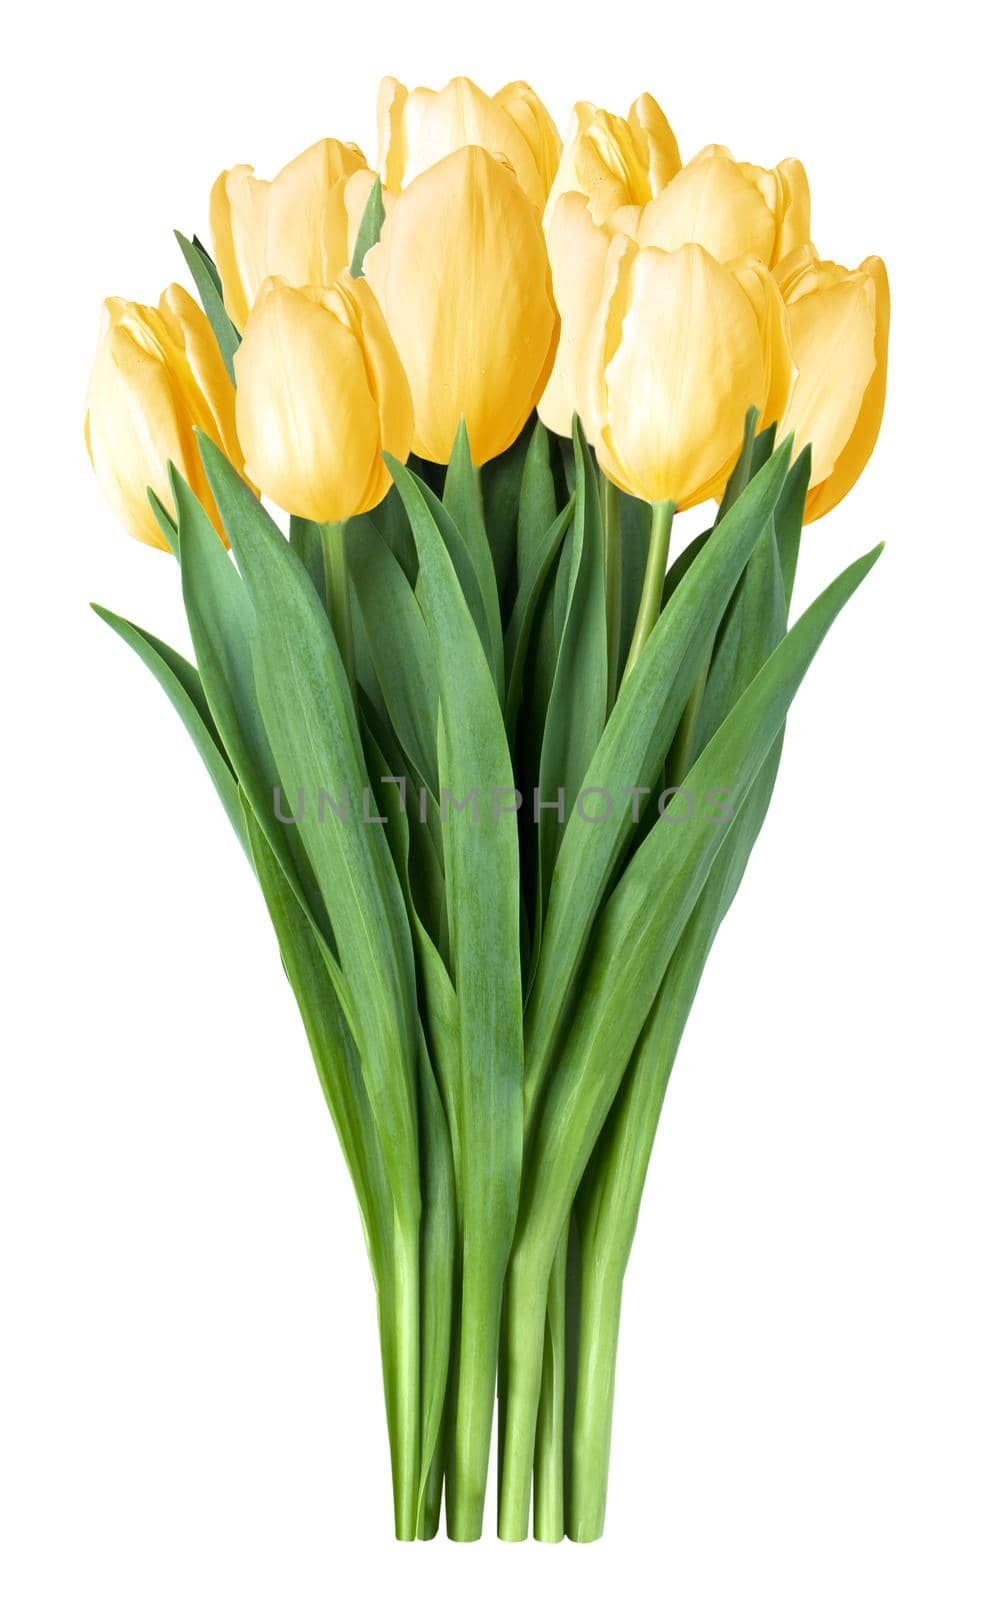 yellow tulips by kornienko